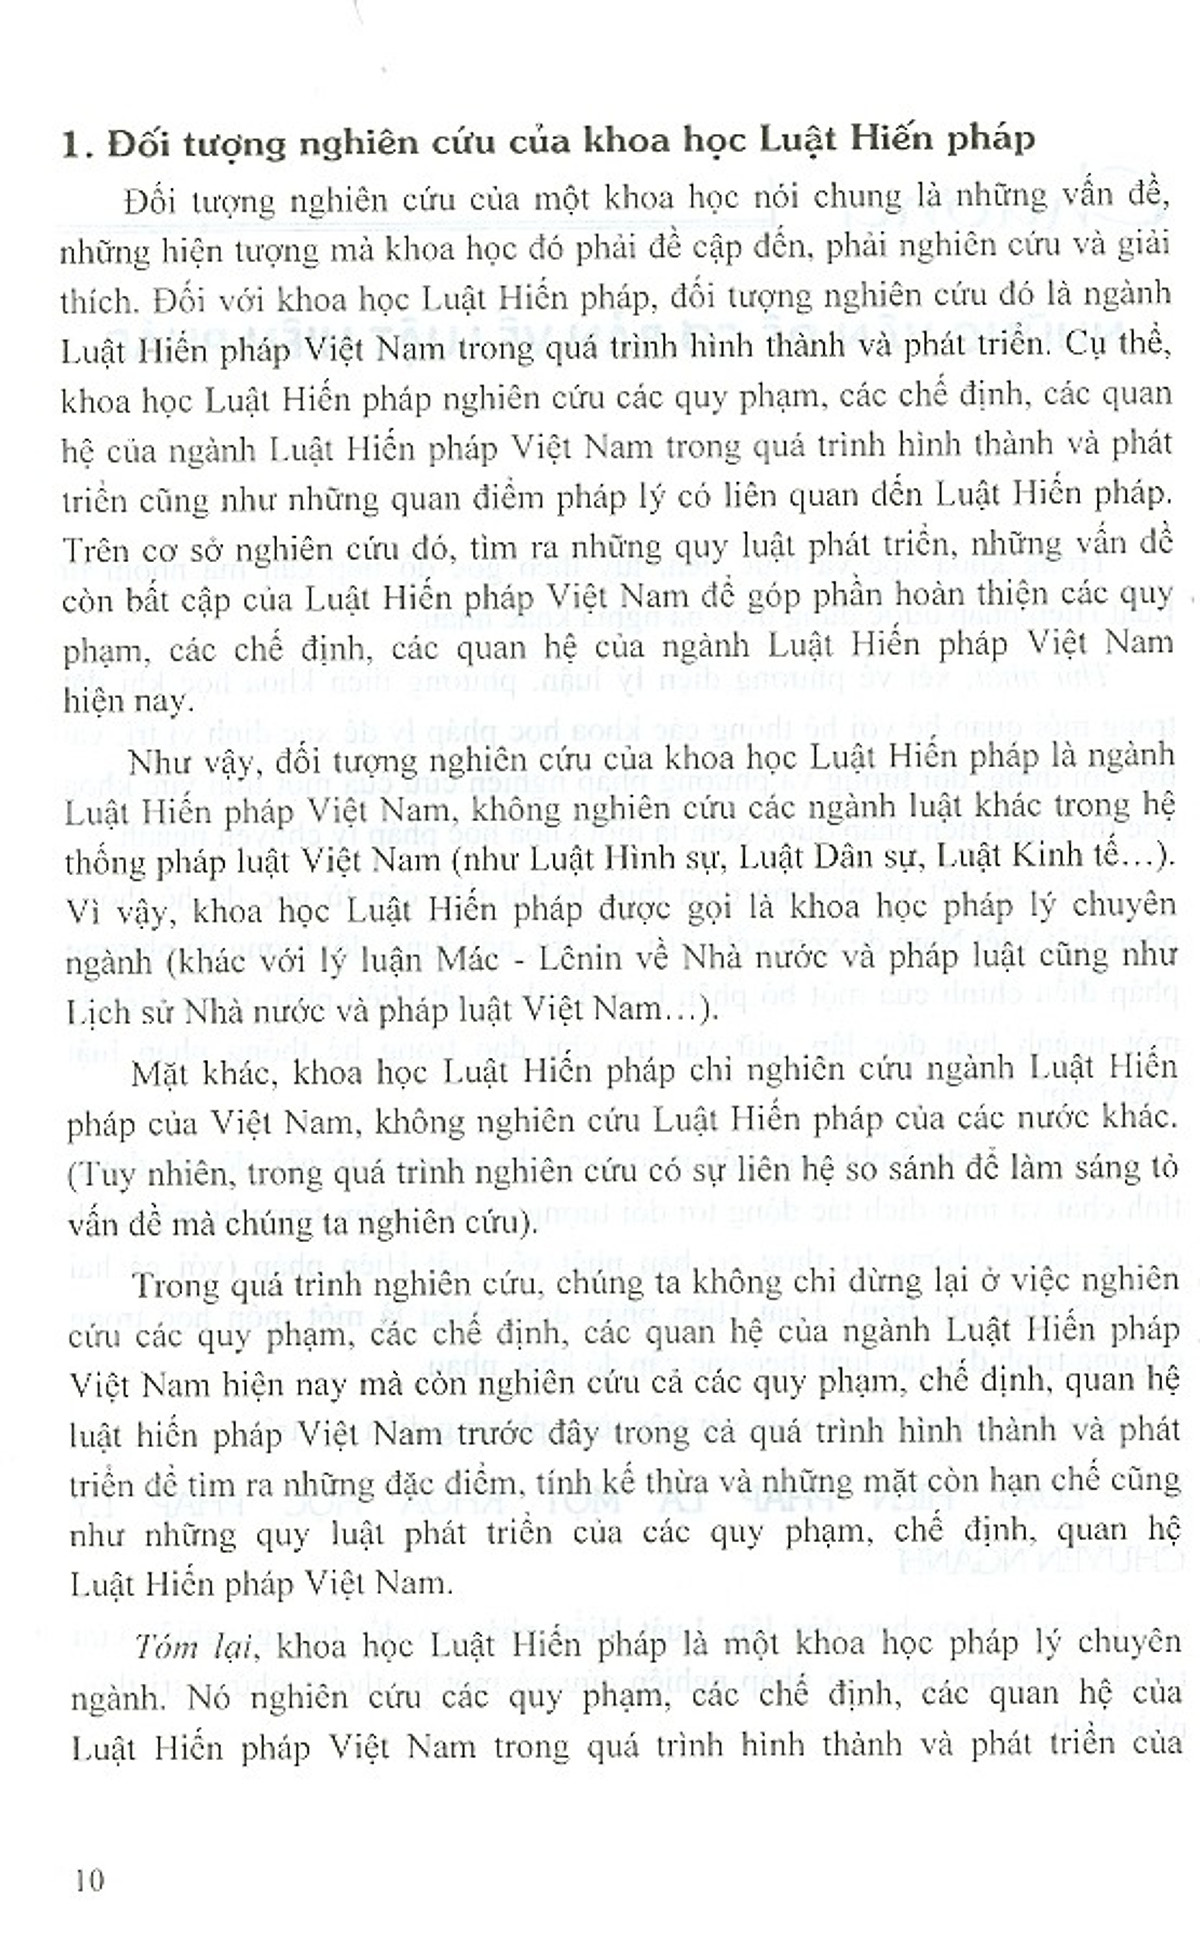 Giáo Trình Luật Hiến Pháp Việt Nam (Dùng Trong Các Trường Đại Học Chuyên Ngành Luật, An Ninh)